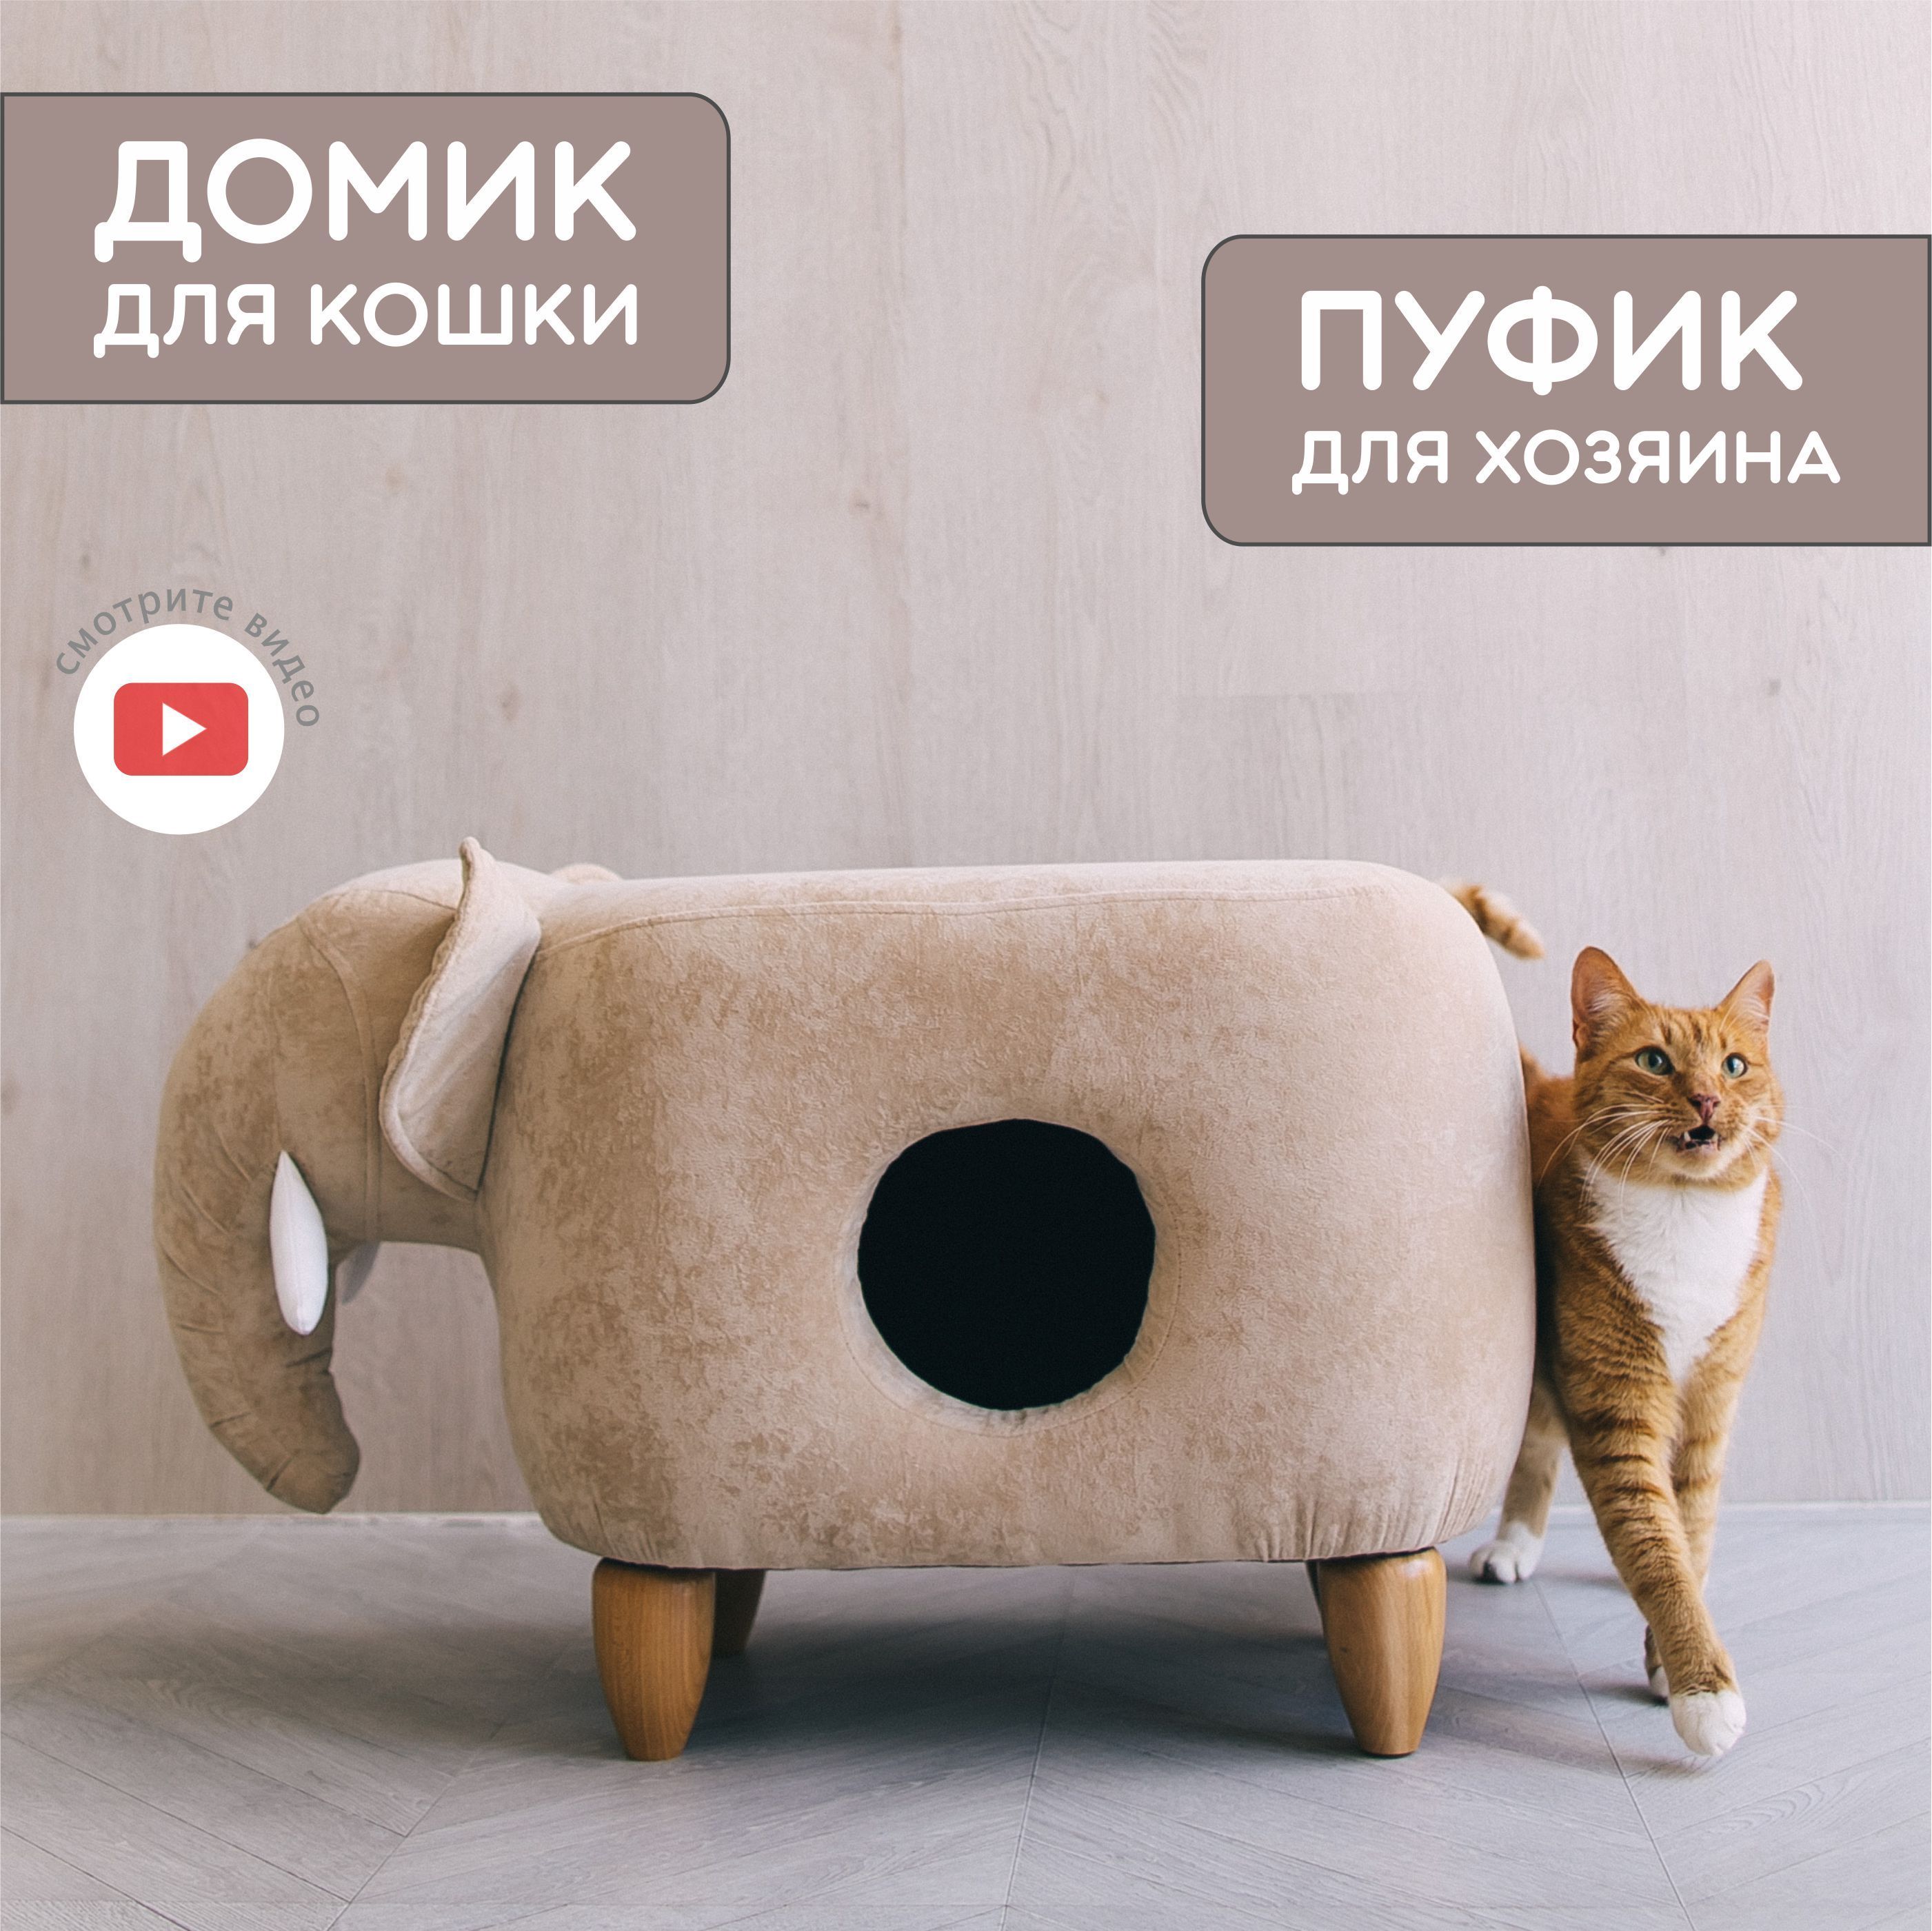 Домик для кошки Tomás XXL заказать онлайн, опт и розница. TRIXIE — официальный поставщик в России